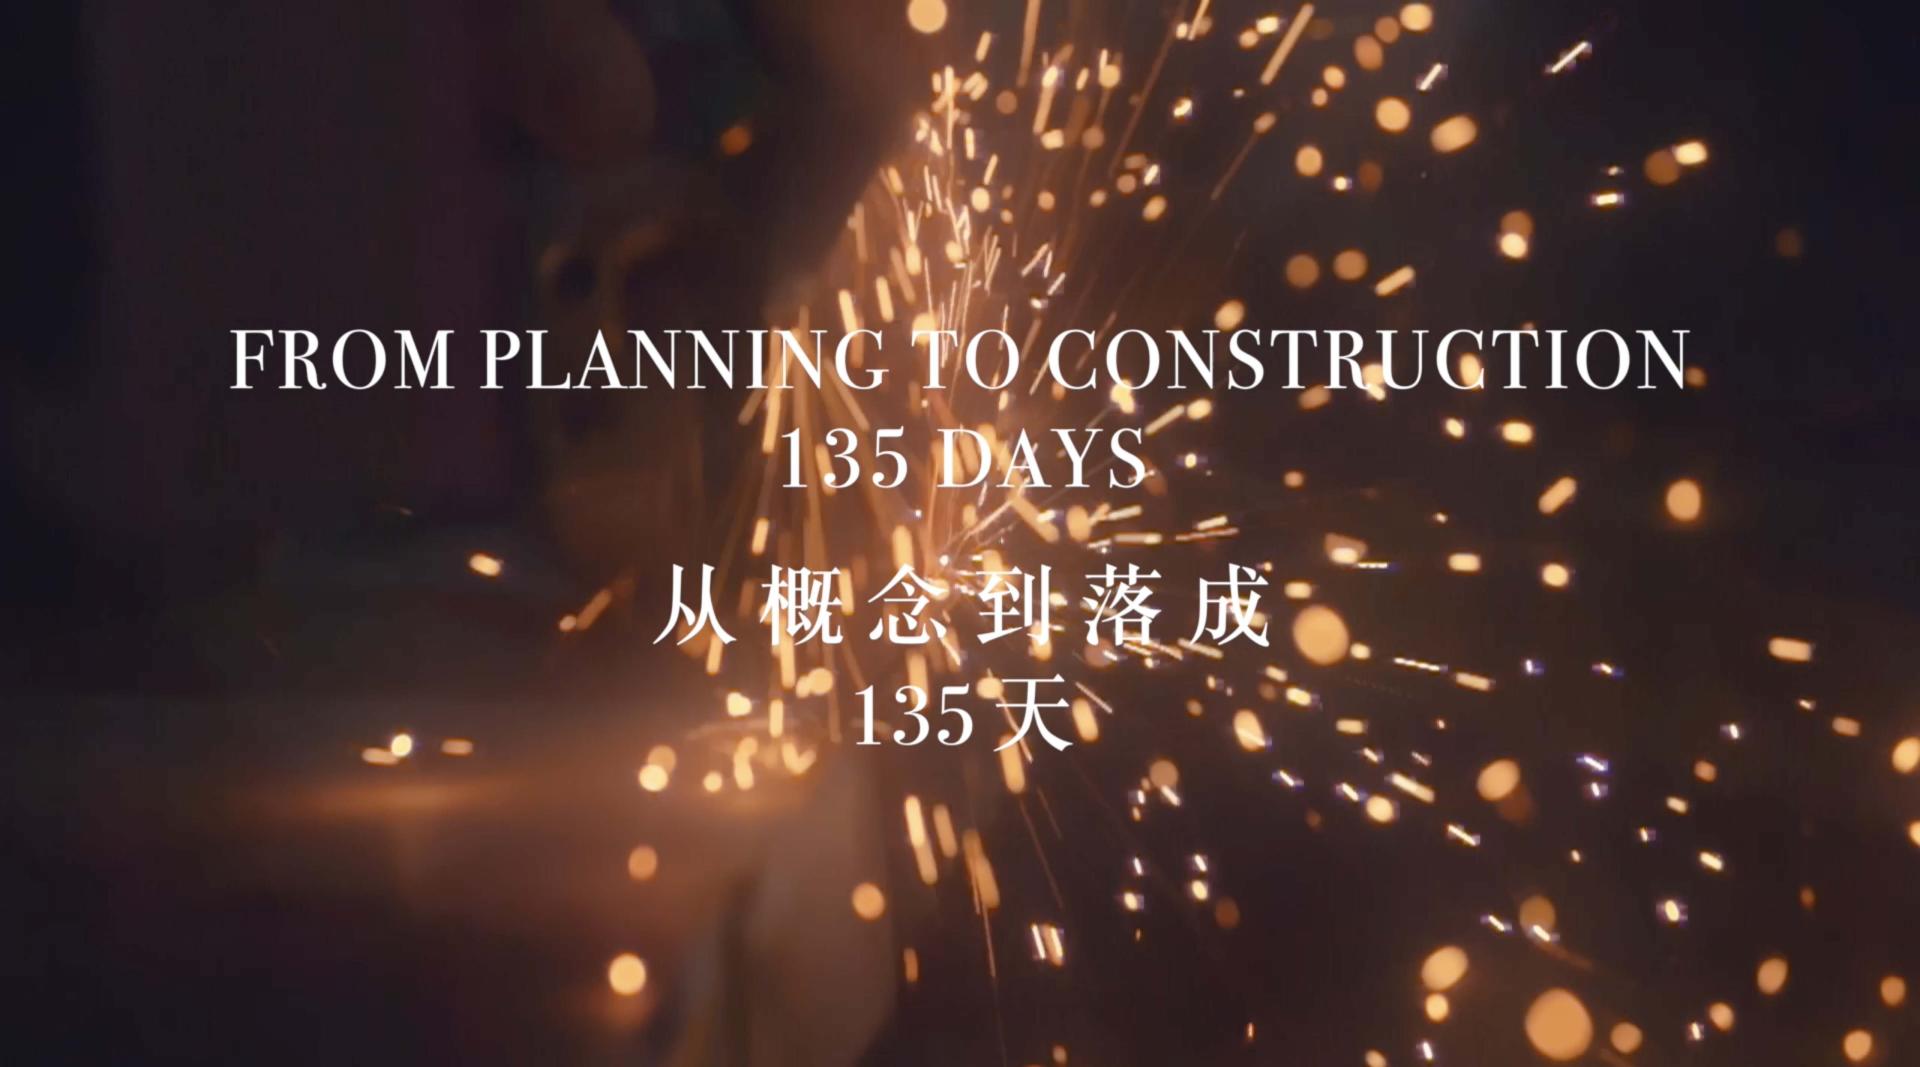 广州太古汇艺术品《达尔文，2019》进驻纪录片30秒版